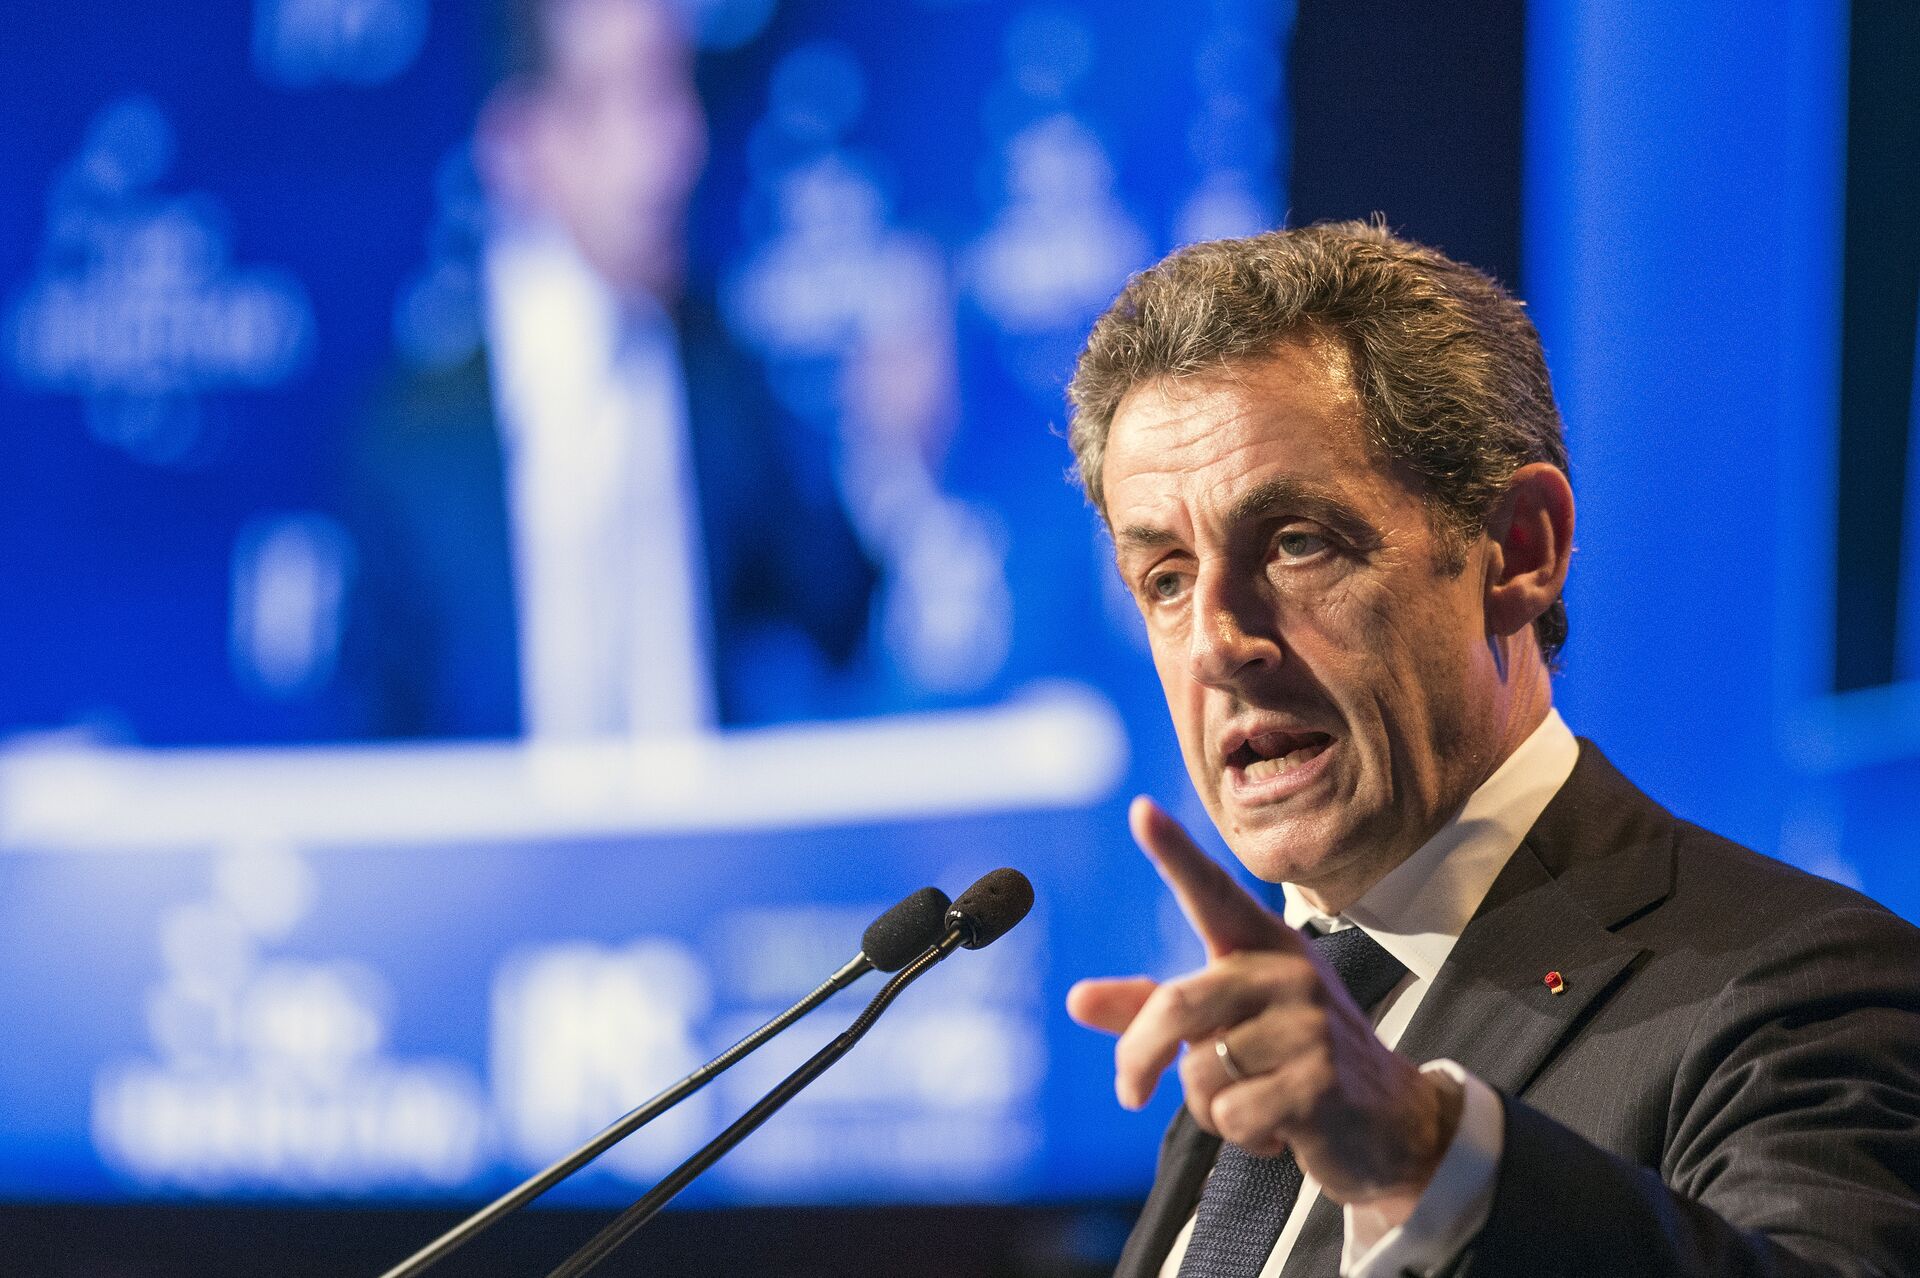 Sarkozy considera acionar a Corte Europeia de Direitos Humanos: 'Não posso aceitar ser condenado' - Sputnik Brasil, 1920, 02.03.2021